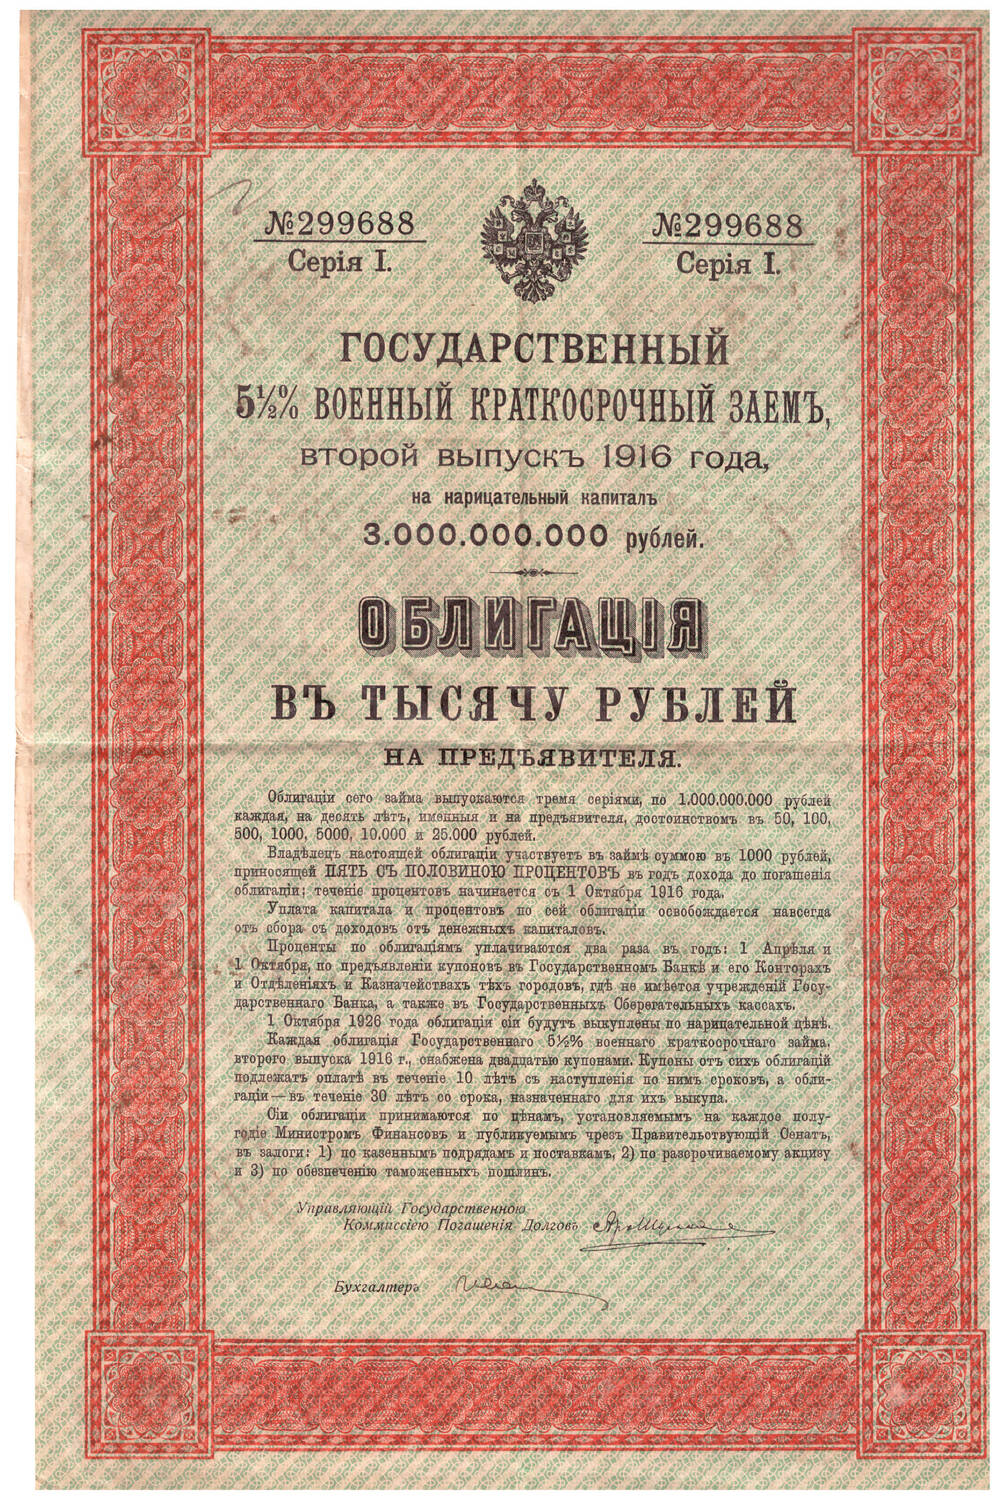 Государственный билет 5,5% военный краткосрочный заем 1916 г облигация в тысячу рублей на предъявителя серия 1 № 299688.